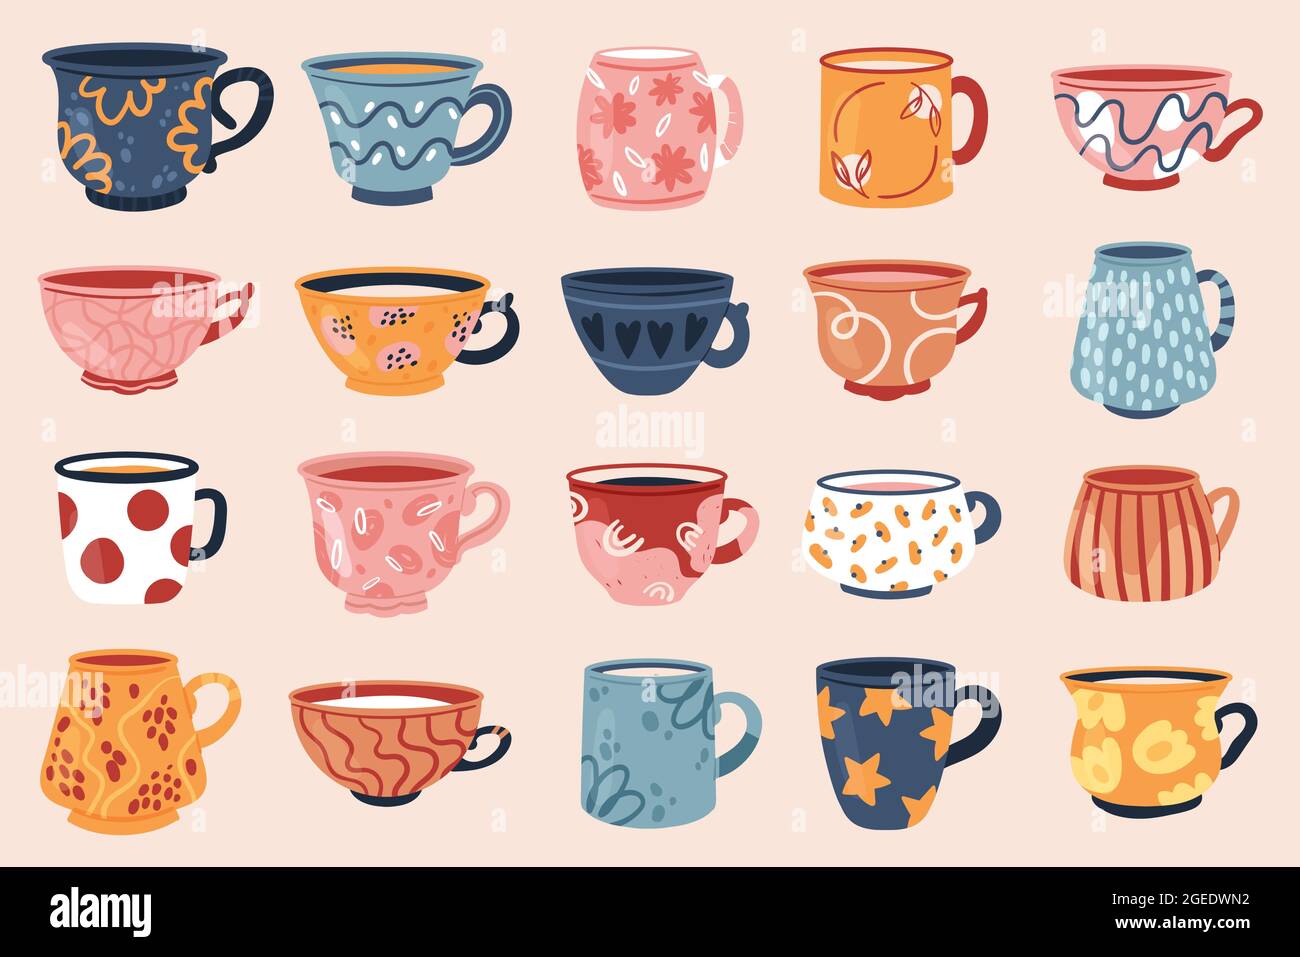 Illustrazione vettoriale del set di tazze vintage per tè e caffè.  Collezione di teacup vintage Cartoon per la festa o la colazione della  cerimonia del tè pomeridiano inglese, fiore retrò, foglia, strisce